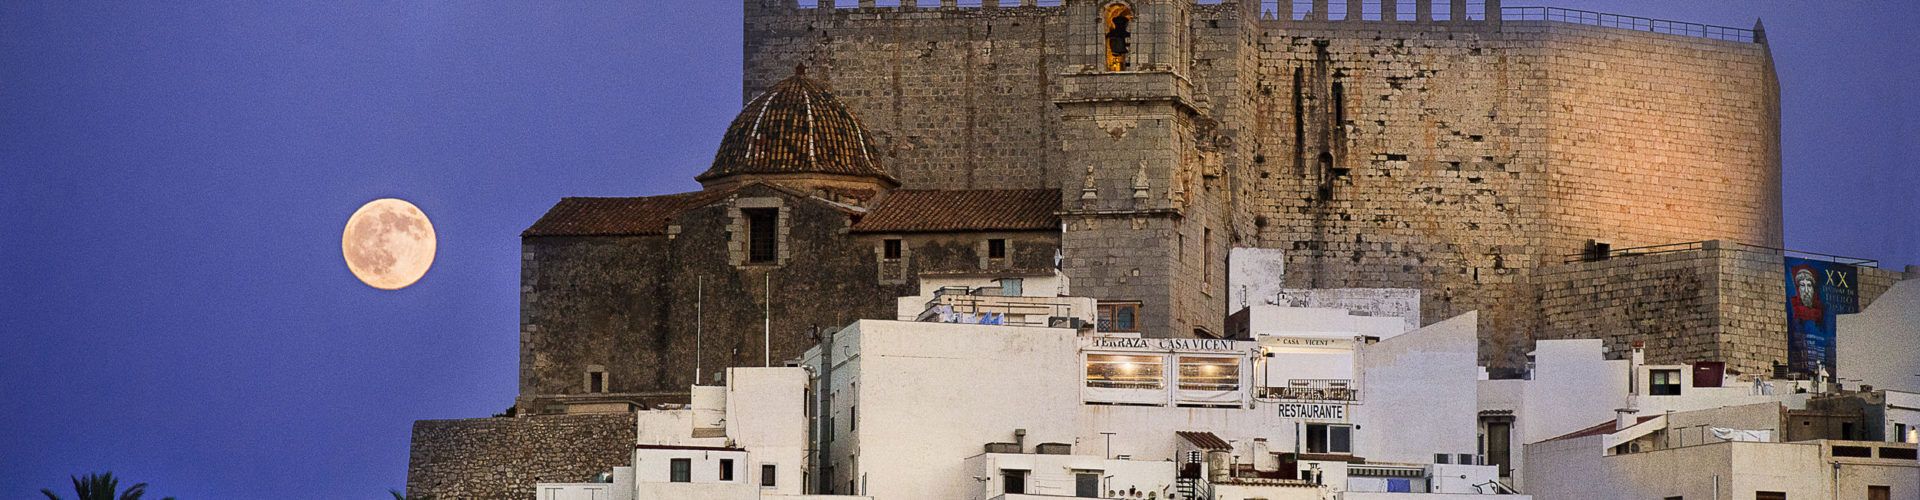 La Diputació de Castelló apagarà la il·luminació del Castell de Peníscola a les 2 del matí per a aplicar les mesures d’estalvi energètic